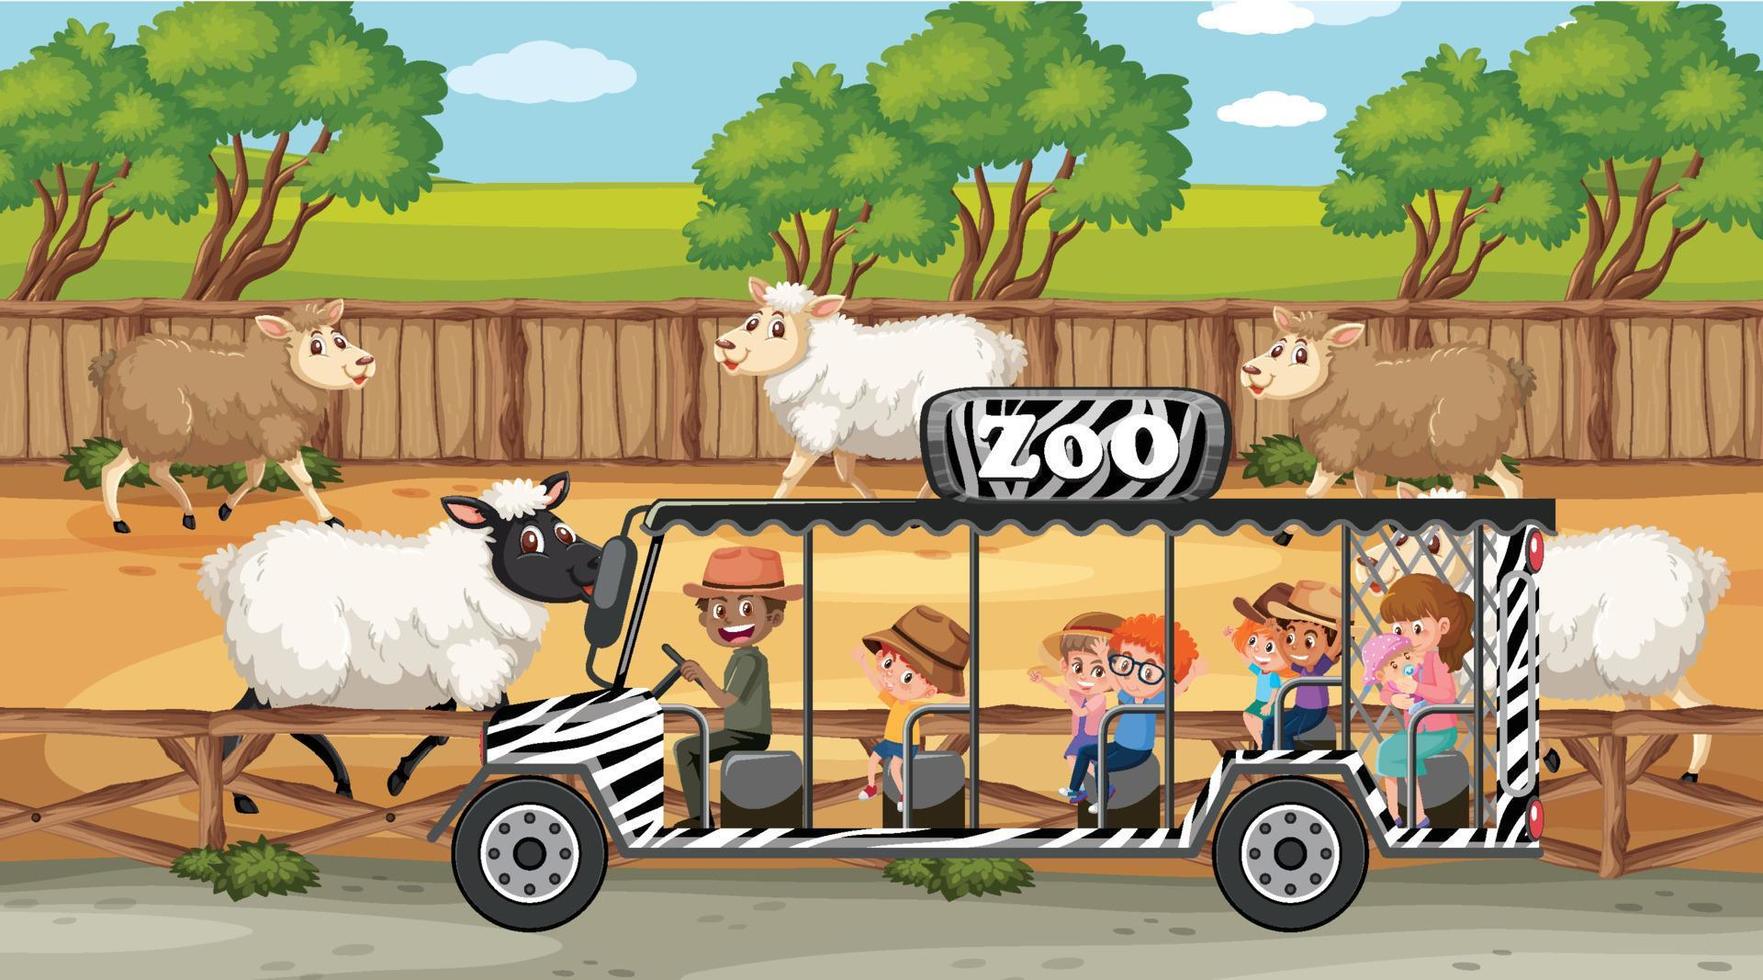 Escenas de safari con muchos personajes de dibujos animados de ovejas y niños. vector